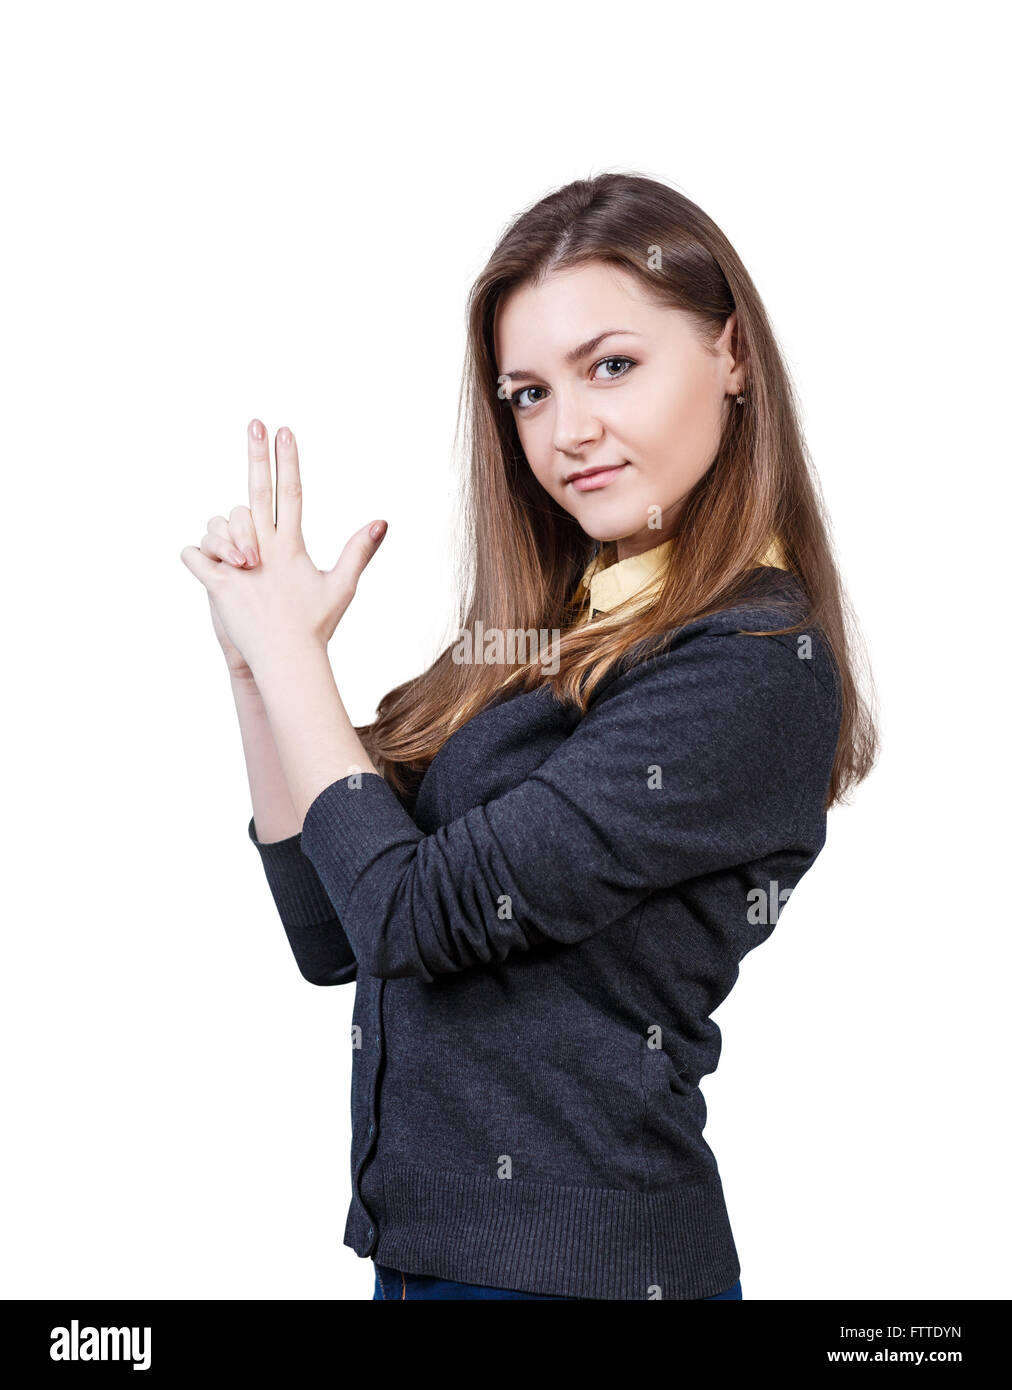 Young beautiful woman showing gun gesture Stock Photo